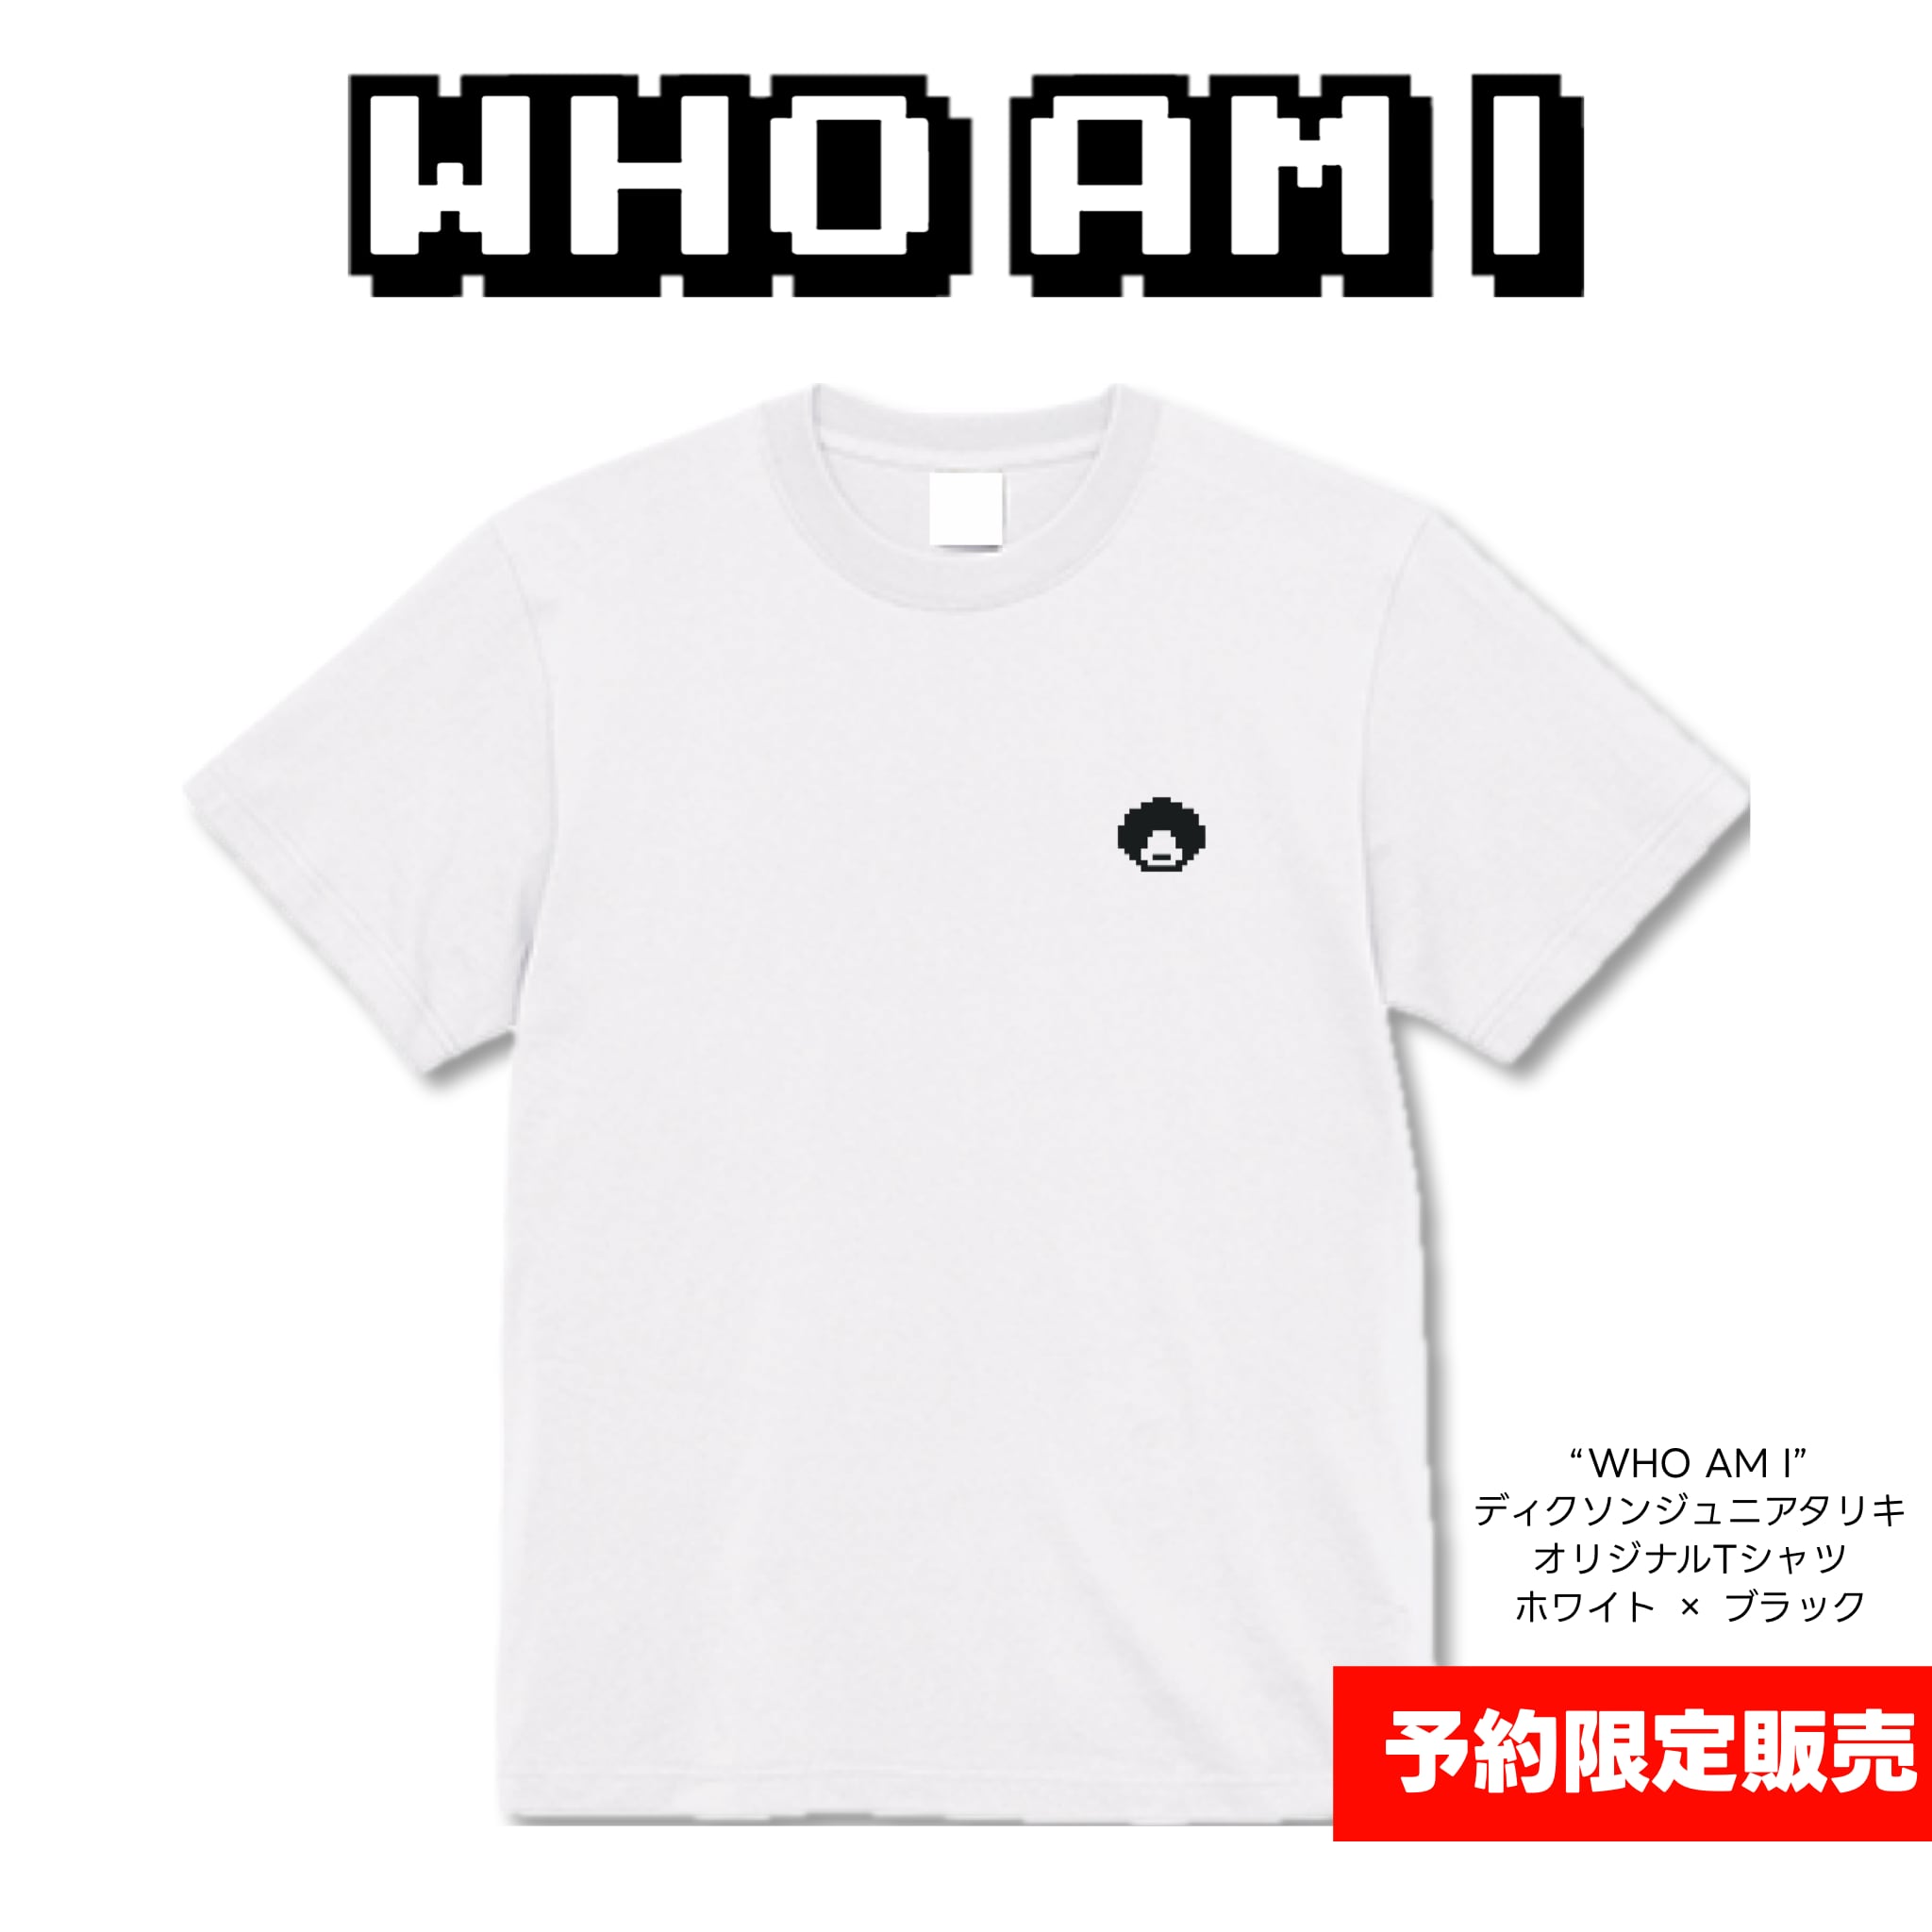 【ディクソンジュニアタリキ】WHO AM I COTTON T-SHIRT(WHITE/BLACK) | 綿素材Tシャツ(ホワイト/ブラック)